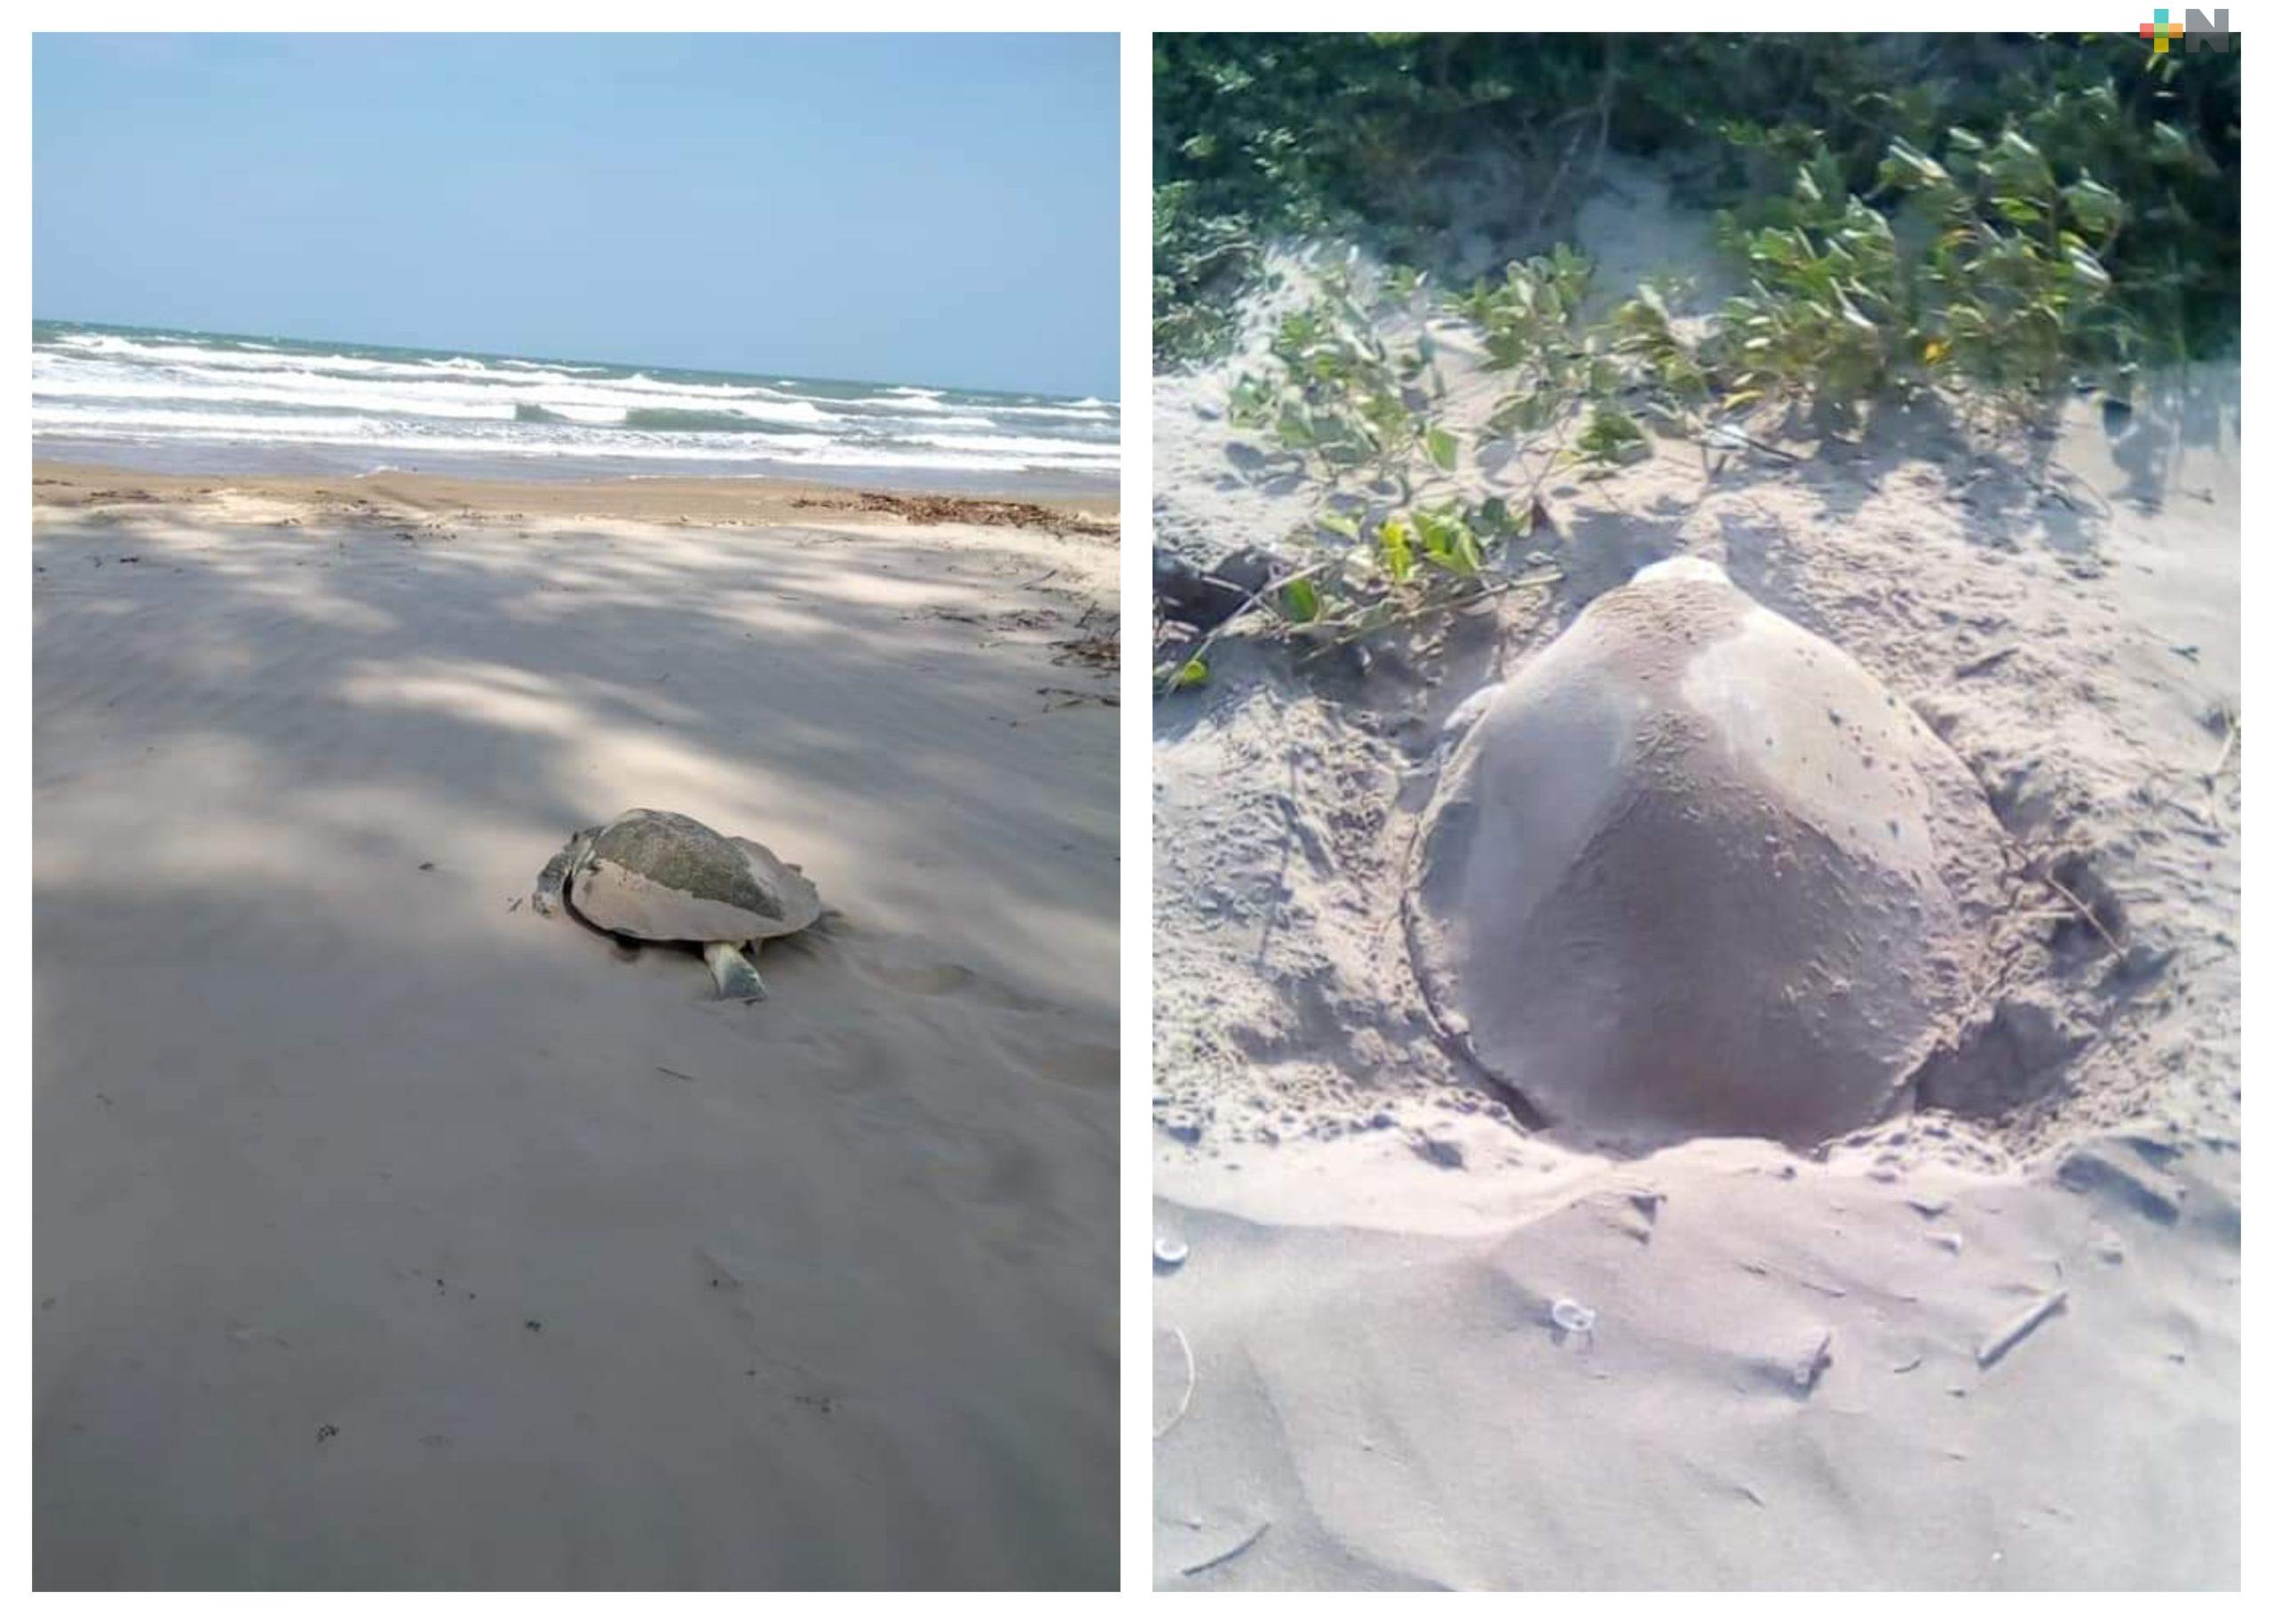 Inició temporada de anidación de tortugas marinas en el estado de Veracruz